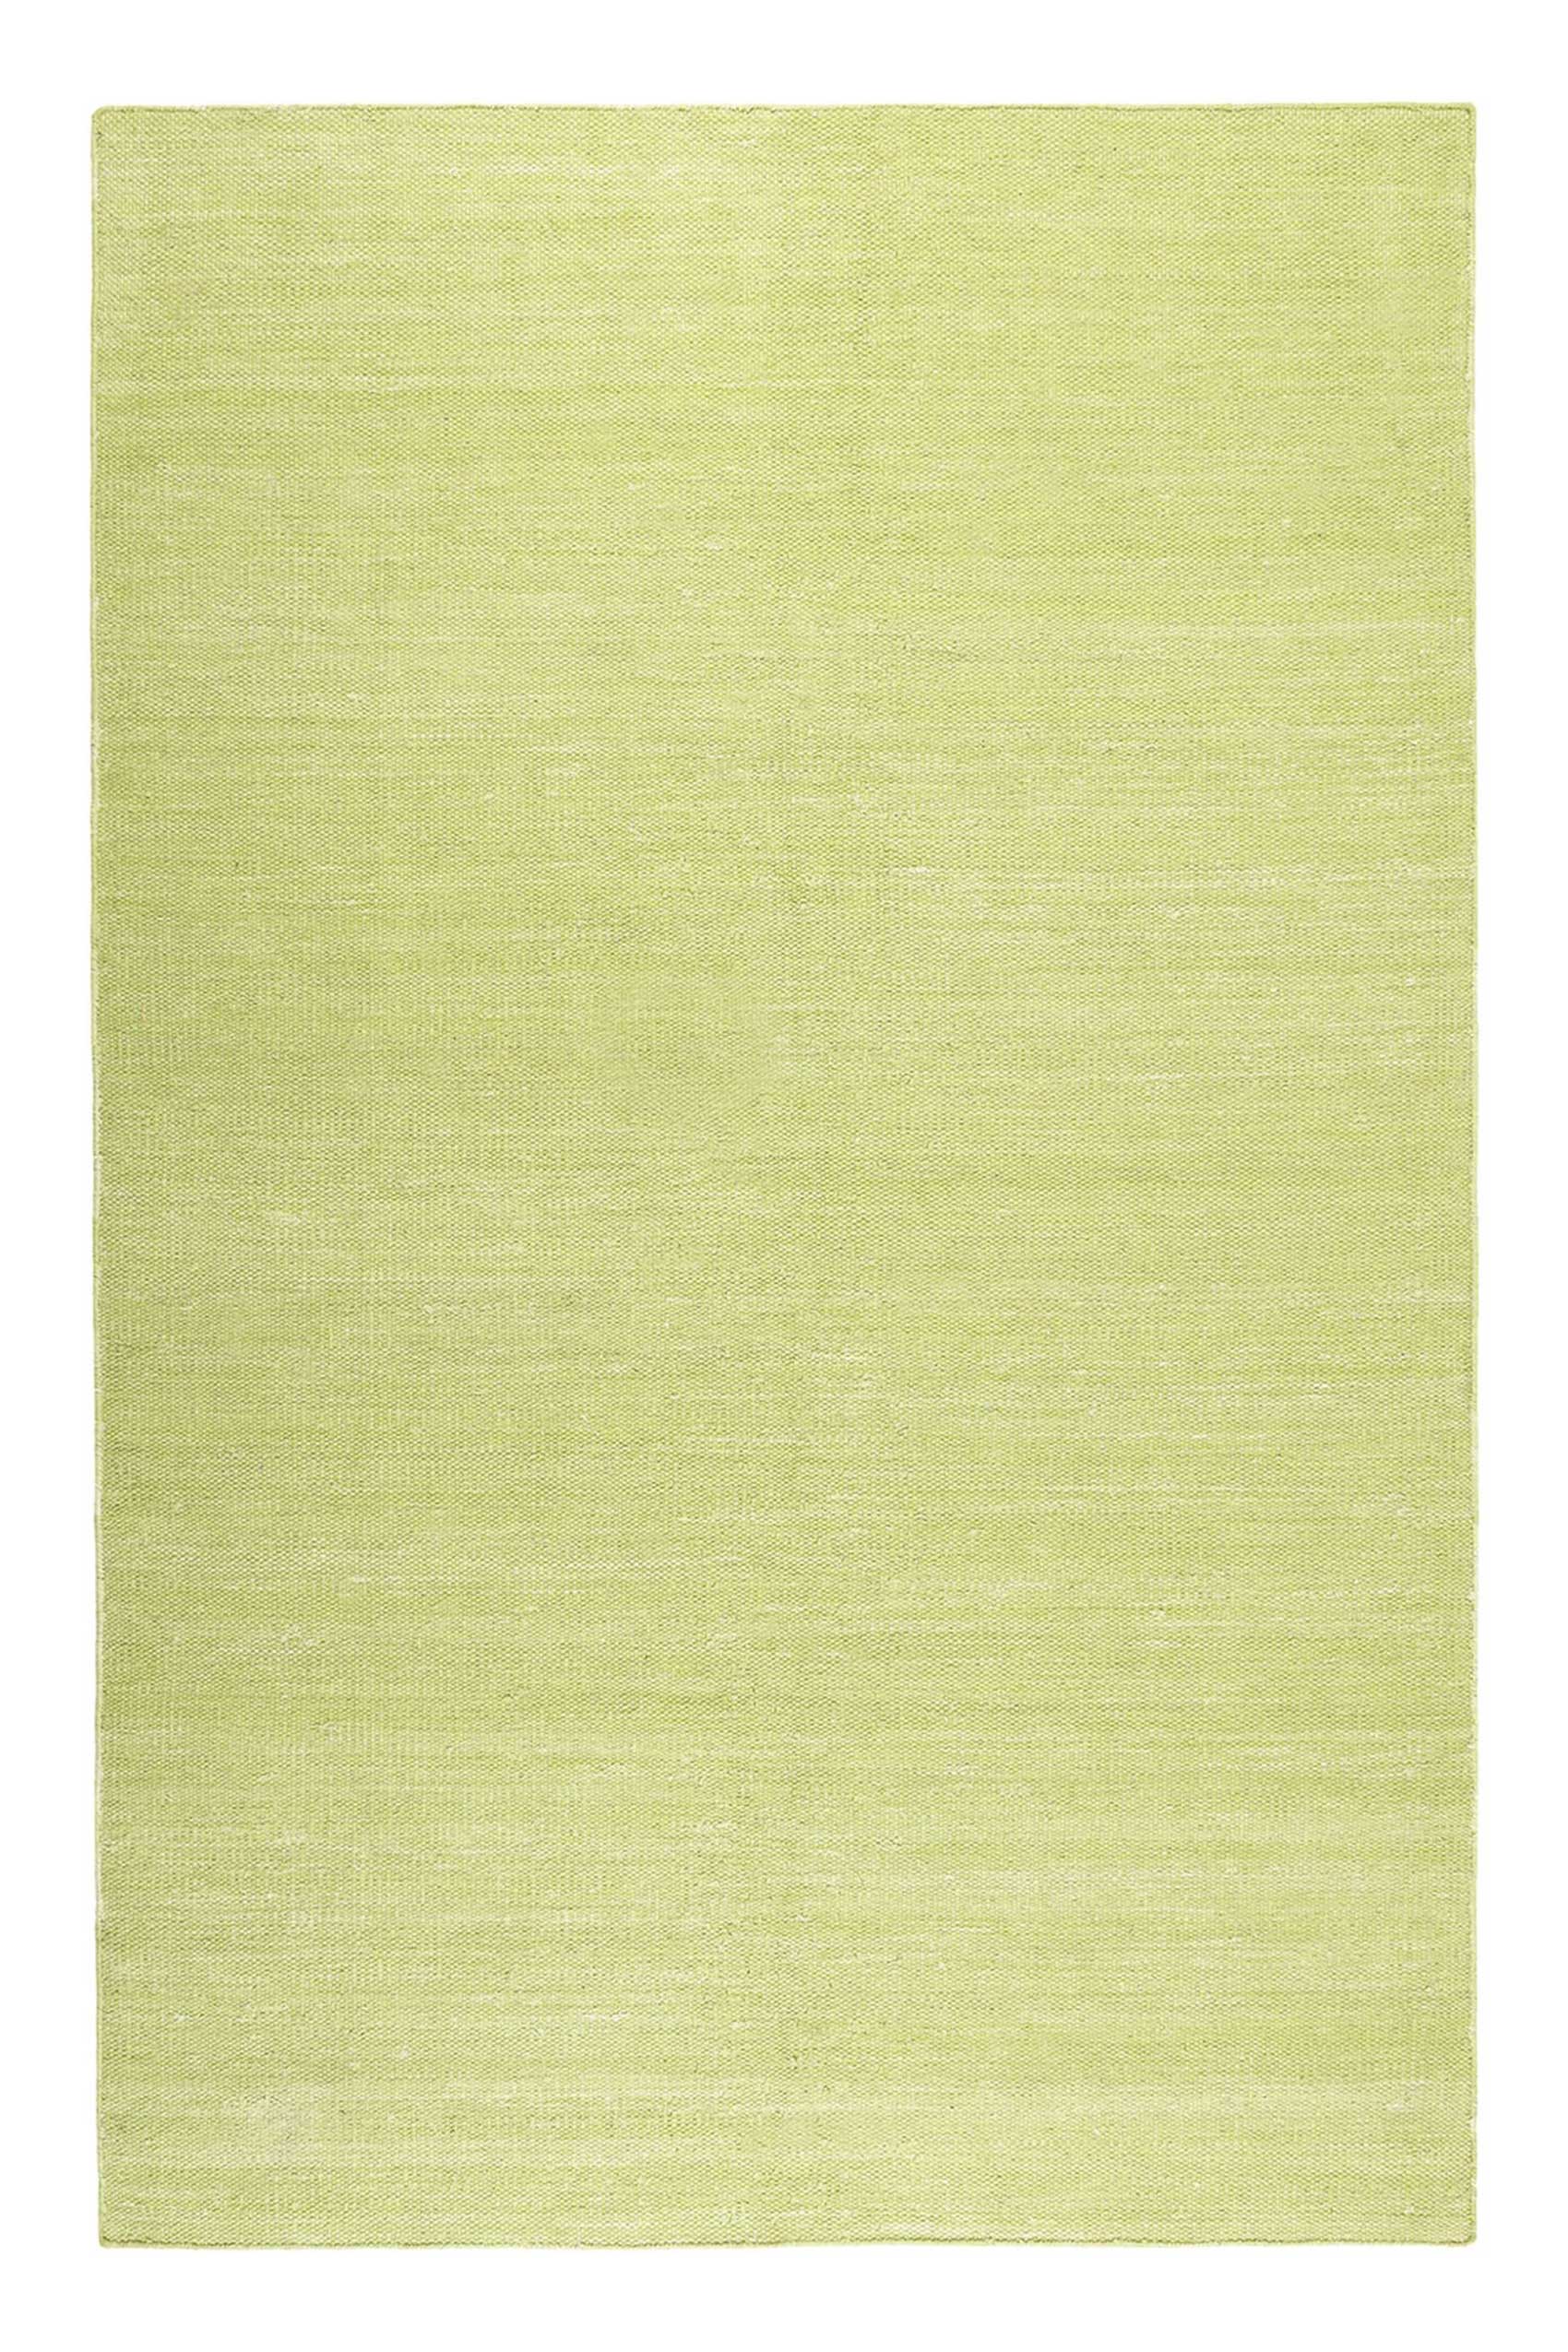 Esprit Outlet- Baumwolle Rainbow Kelim aus Teppich – Kurzflor Grün » Teppiche «